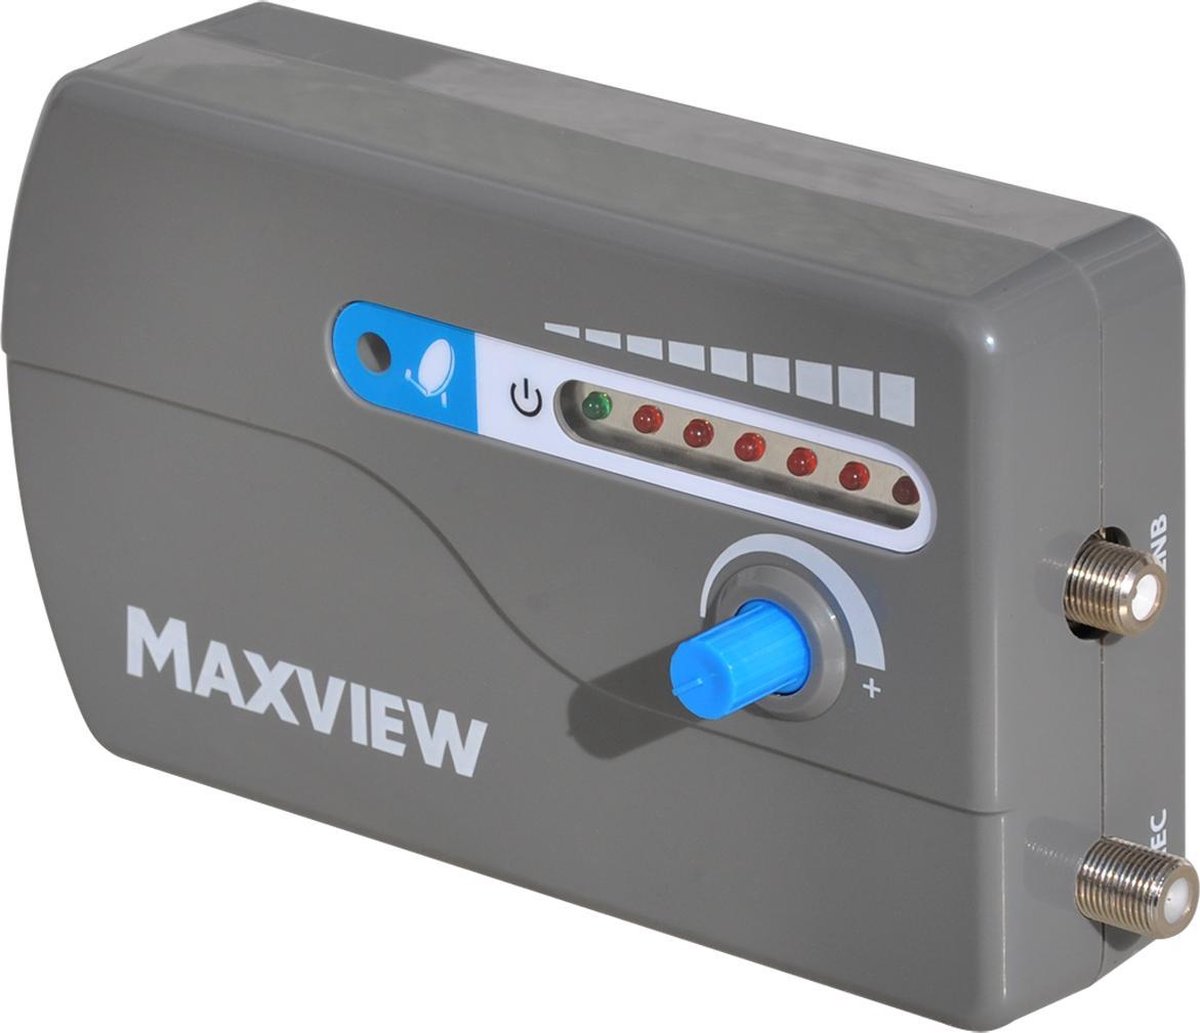 Maxview SatFinder Satelietontvanger - Universele satellietzoeker met LED indicatie en niveau-aanduiding I.D. MXL040 - Maxview